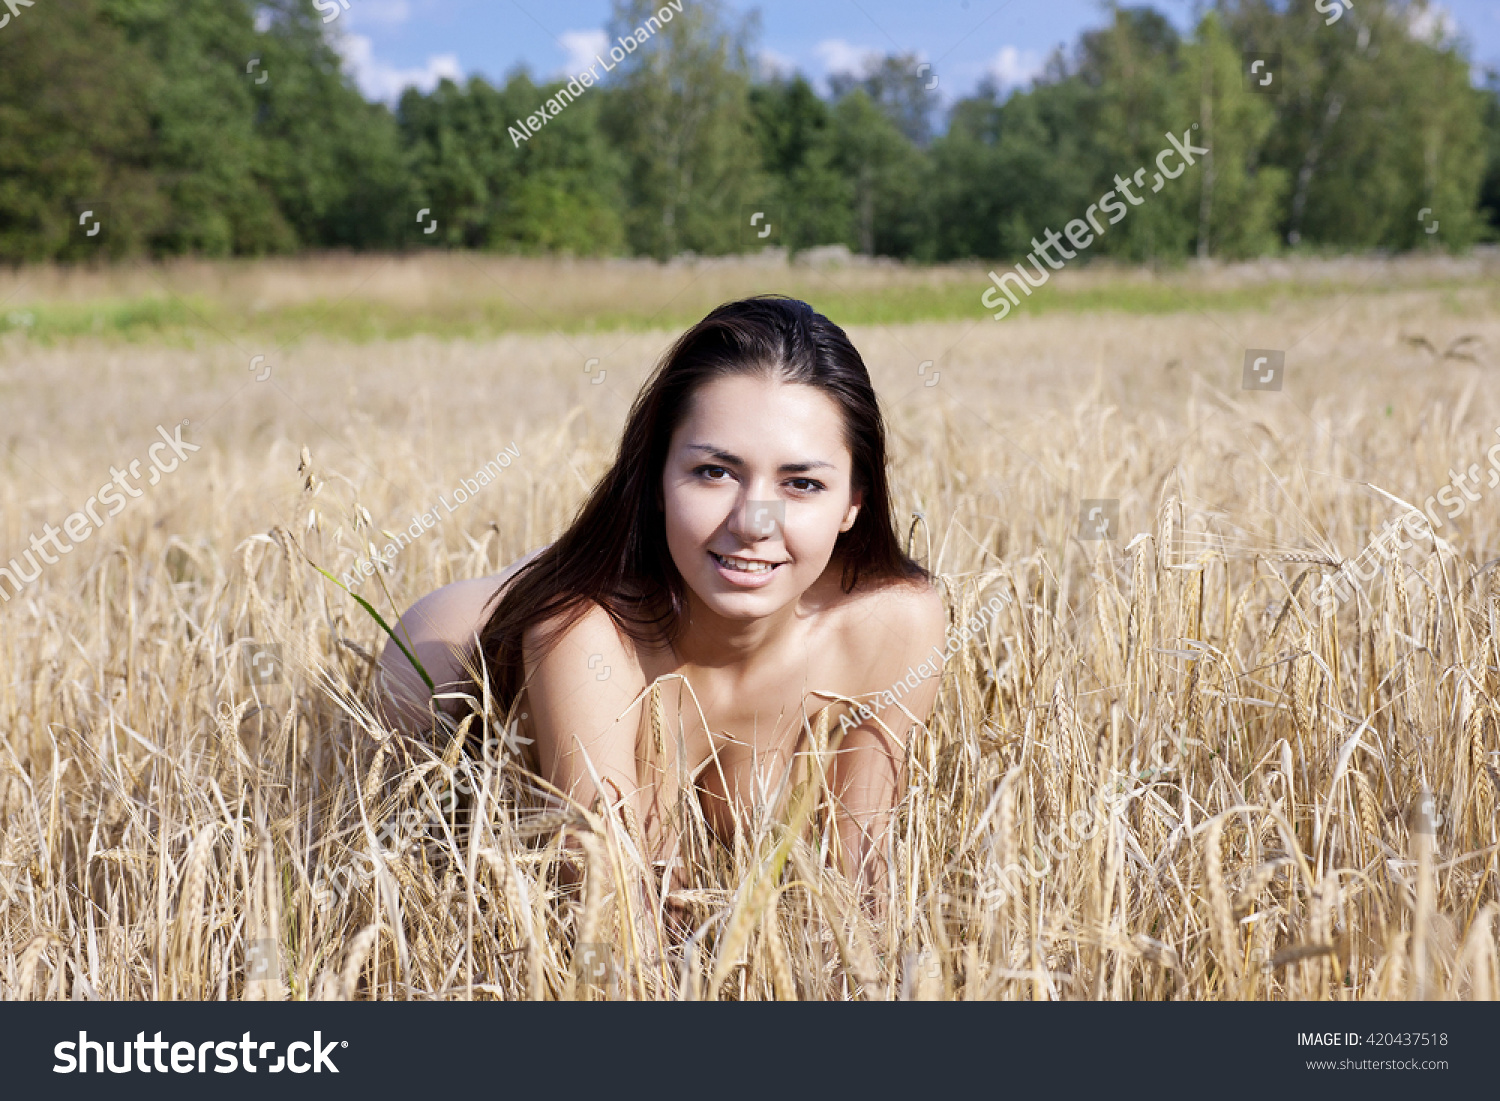 Nude in field